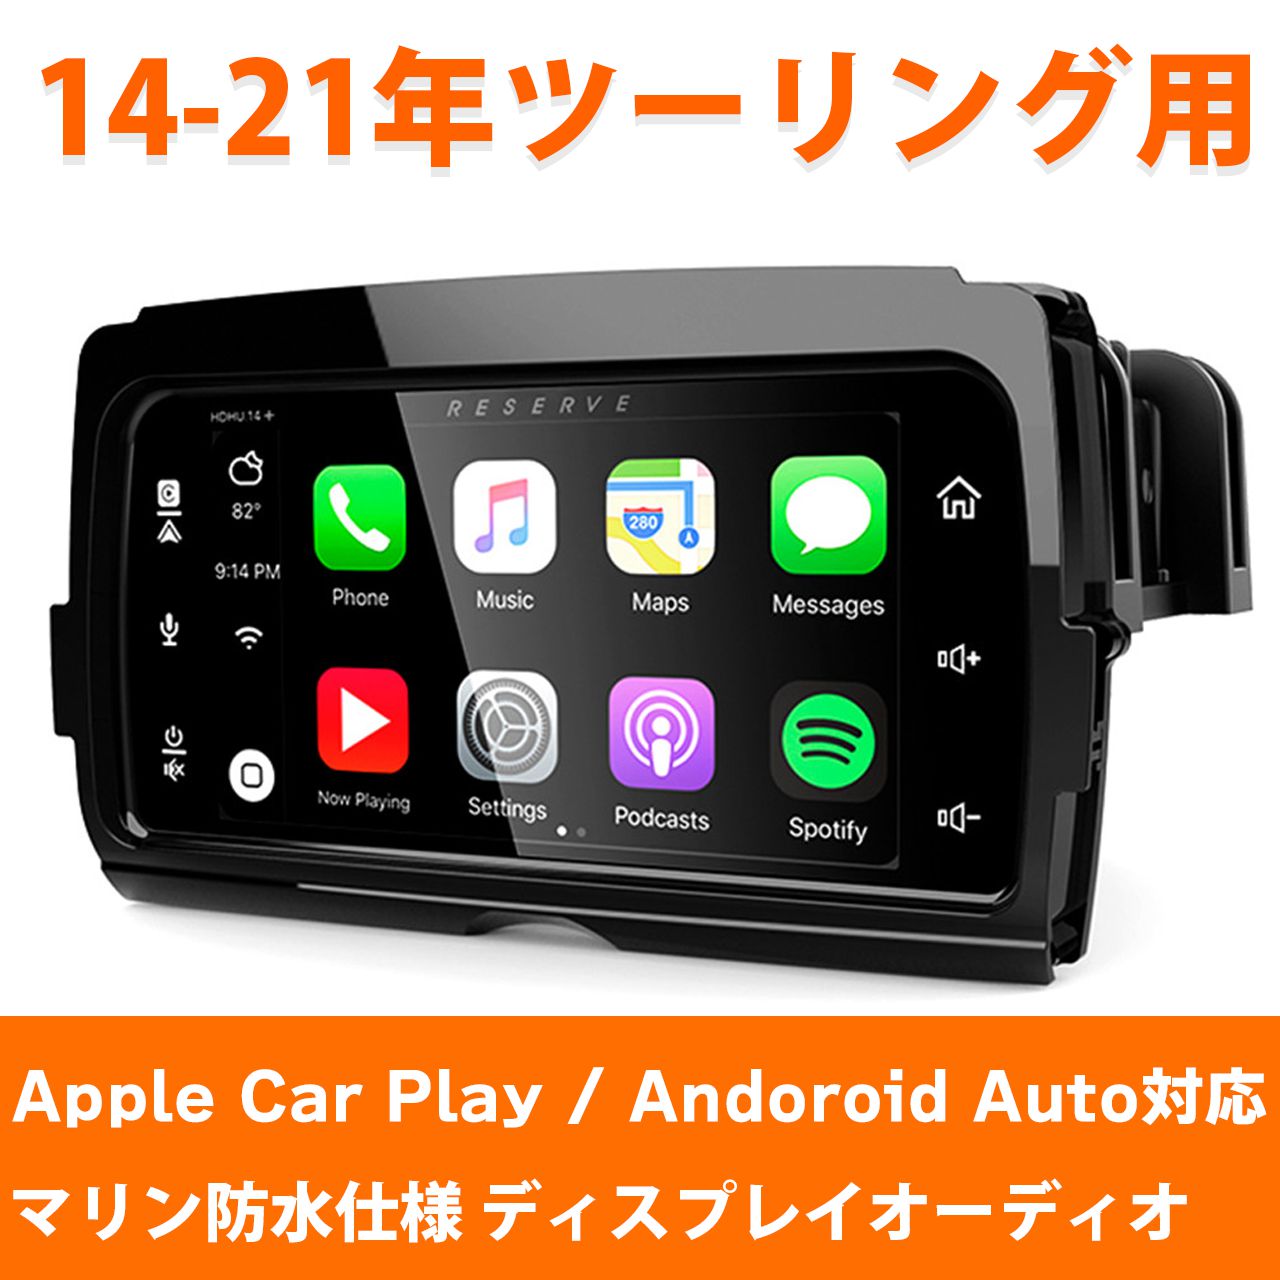 【アウトレットセール】LBPS■ストリームサウンドリザーブ HDHU14+ Apple Car play ,Android Auto対応 マリン防水仕様 【14-21年 ツーリング用】